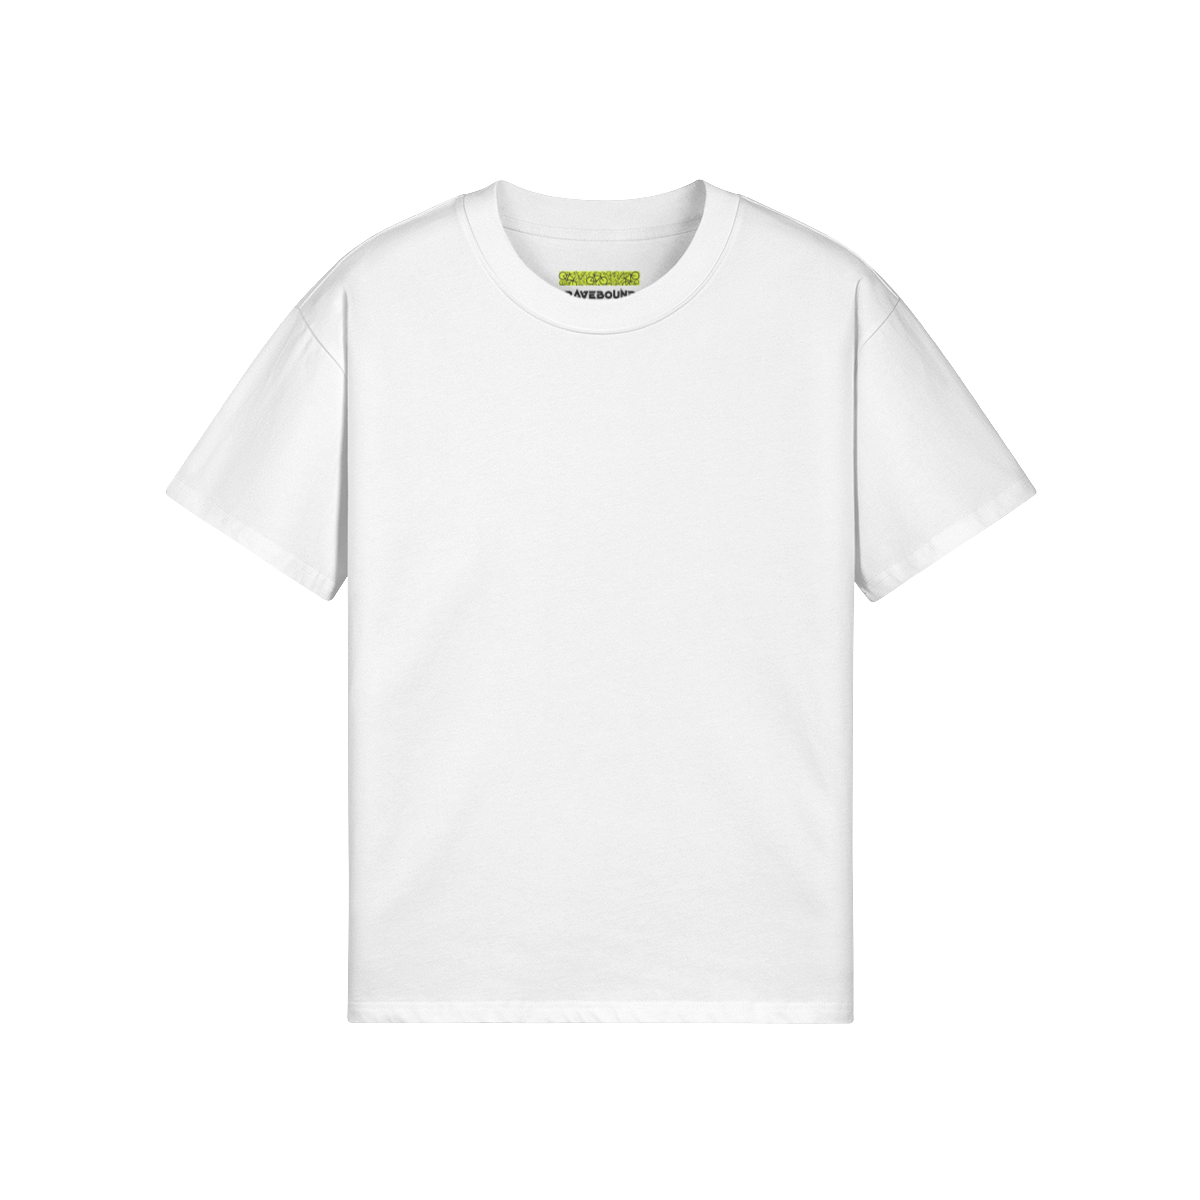 RAVE ON - Unisex Oversized T-shirt